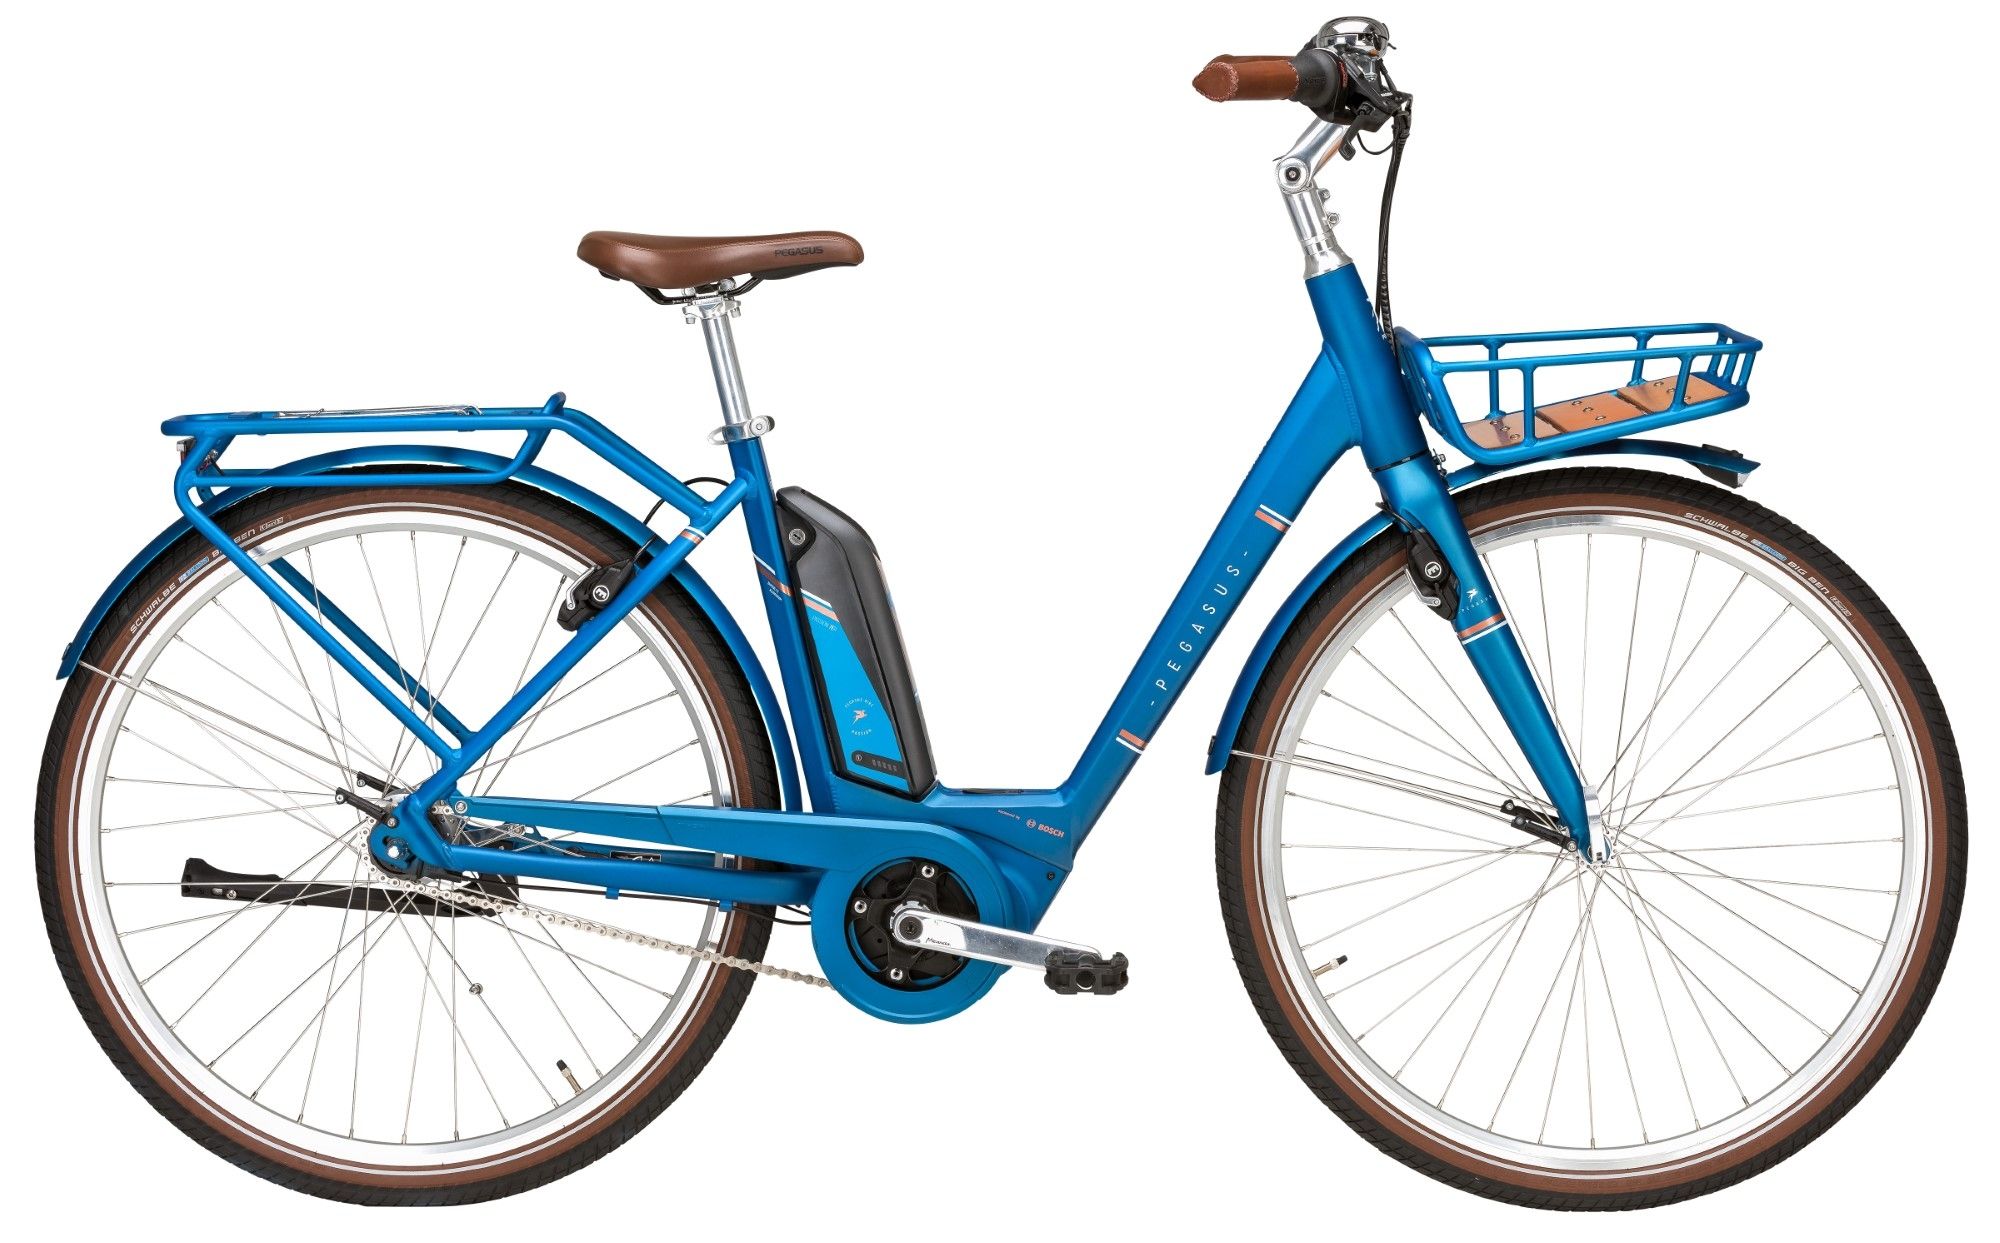 Pegasus Passion E7F Damen 400Wh blau (2019) - Fahrrad Online Shop